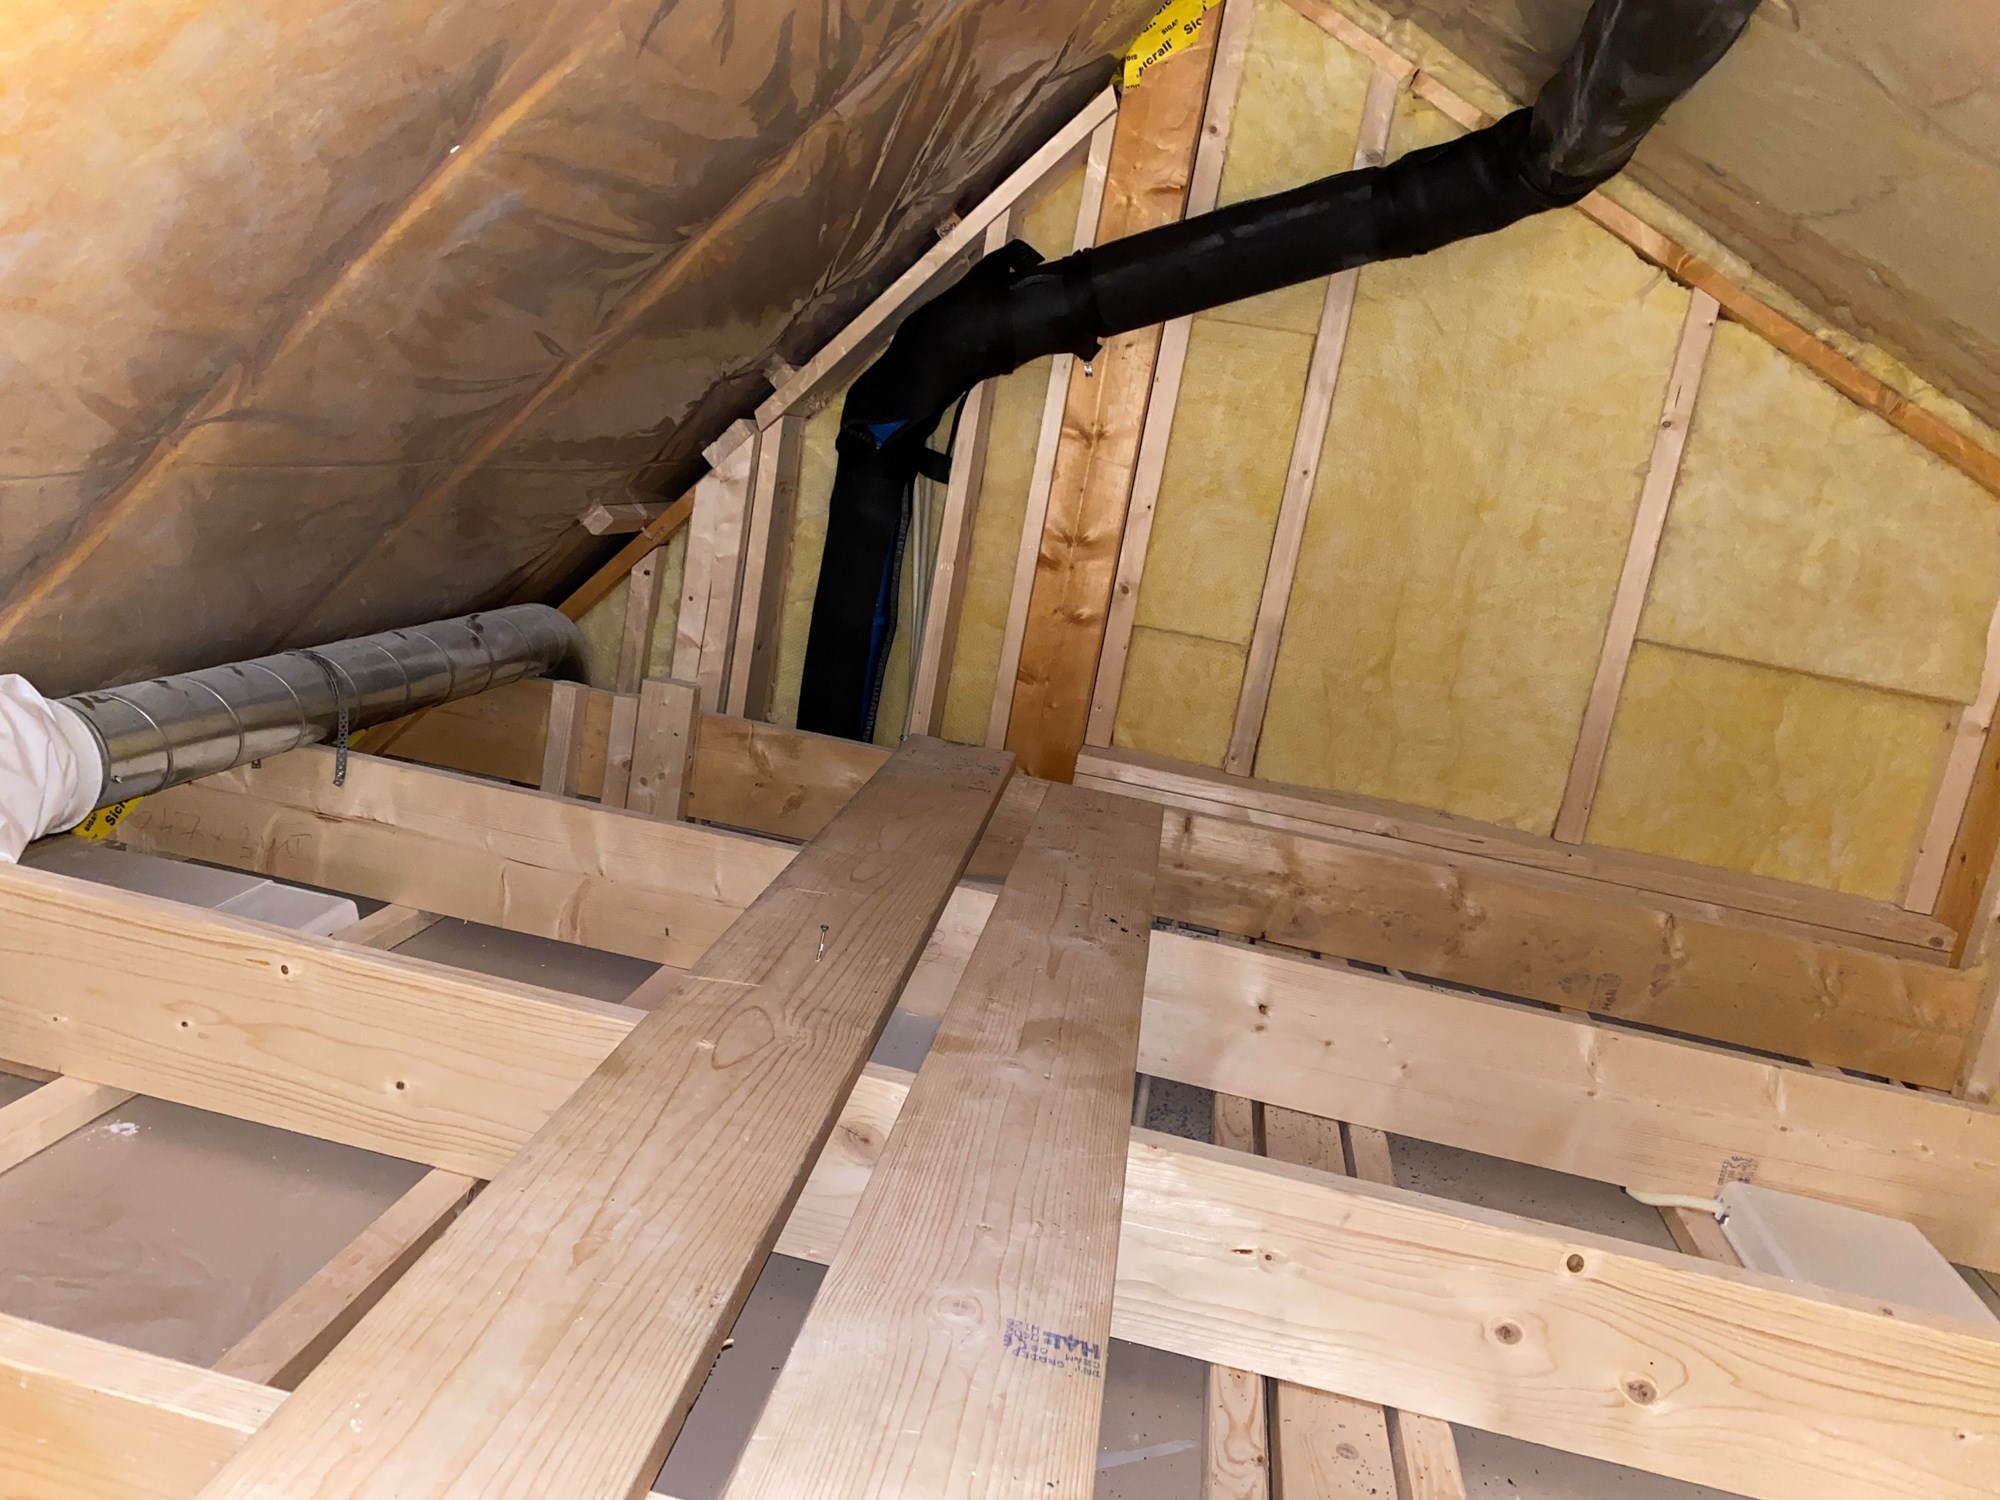 Legge gulv + ekstra isolering av (varm)loft i helt ny bolig - loft1.jpg - matsmekker82